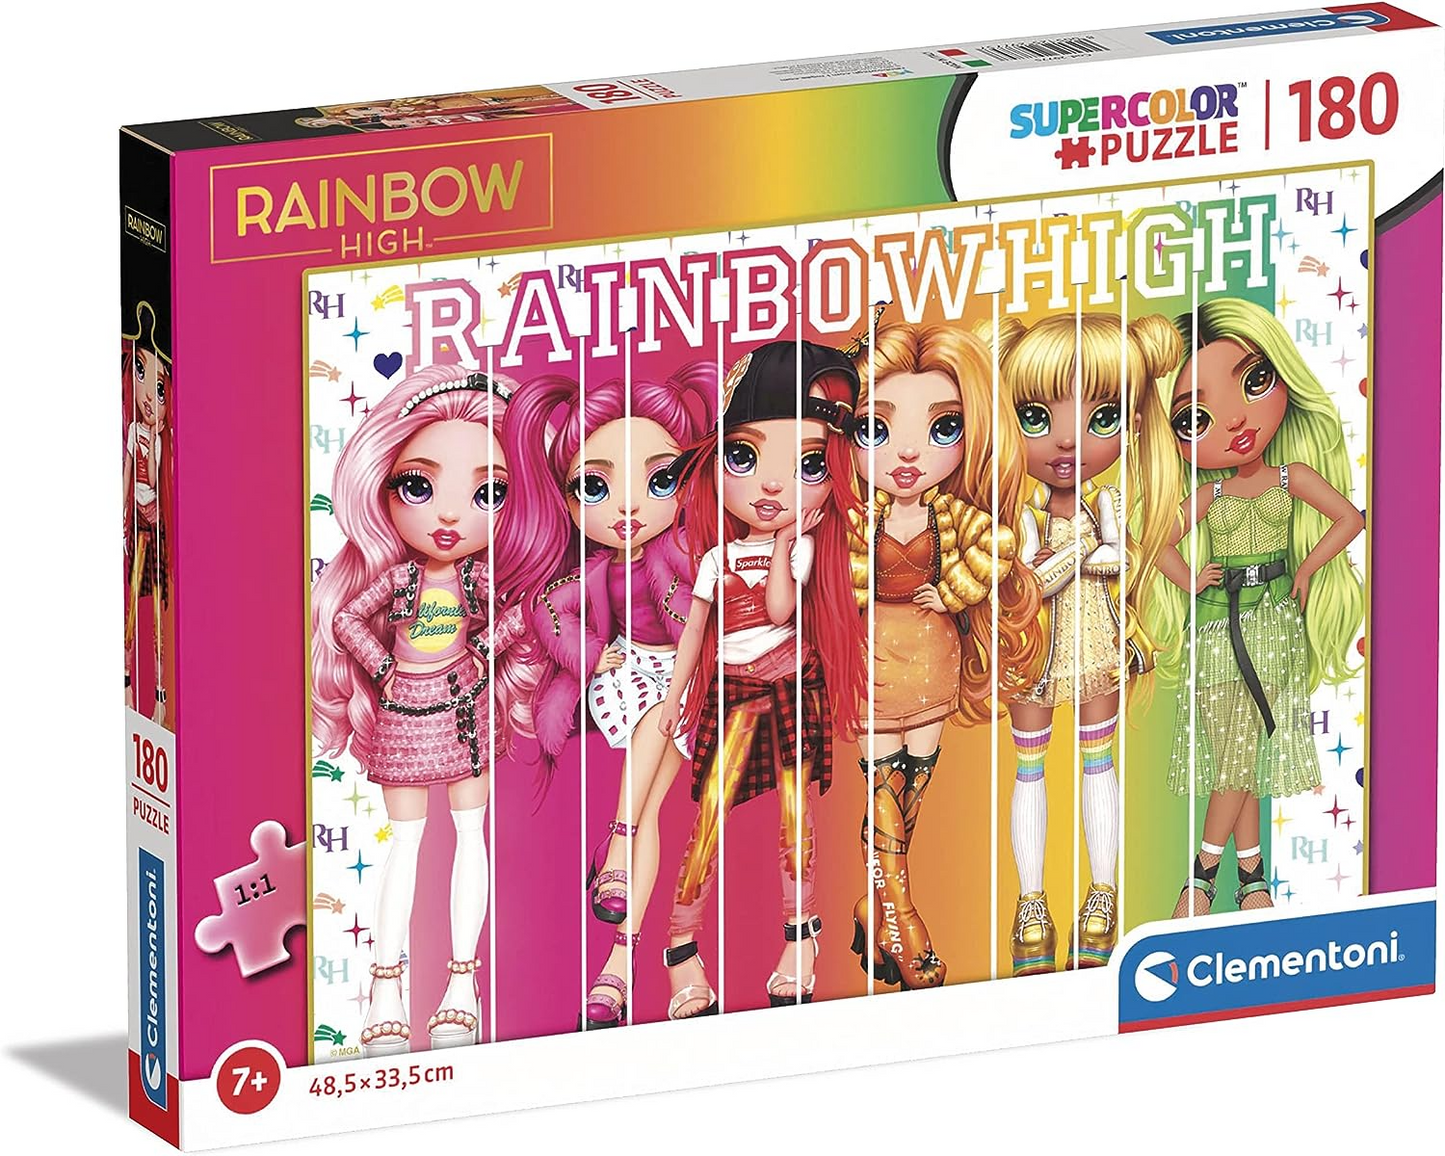 Clementoni 29775 Quebra-cabeça Rainbow High 180pcs Supercolor High-180 Peças Crianças de 7 anos, Multicolor, Médio